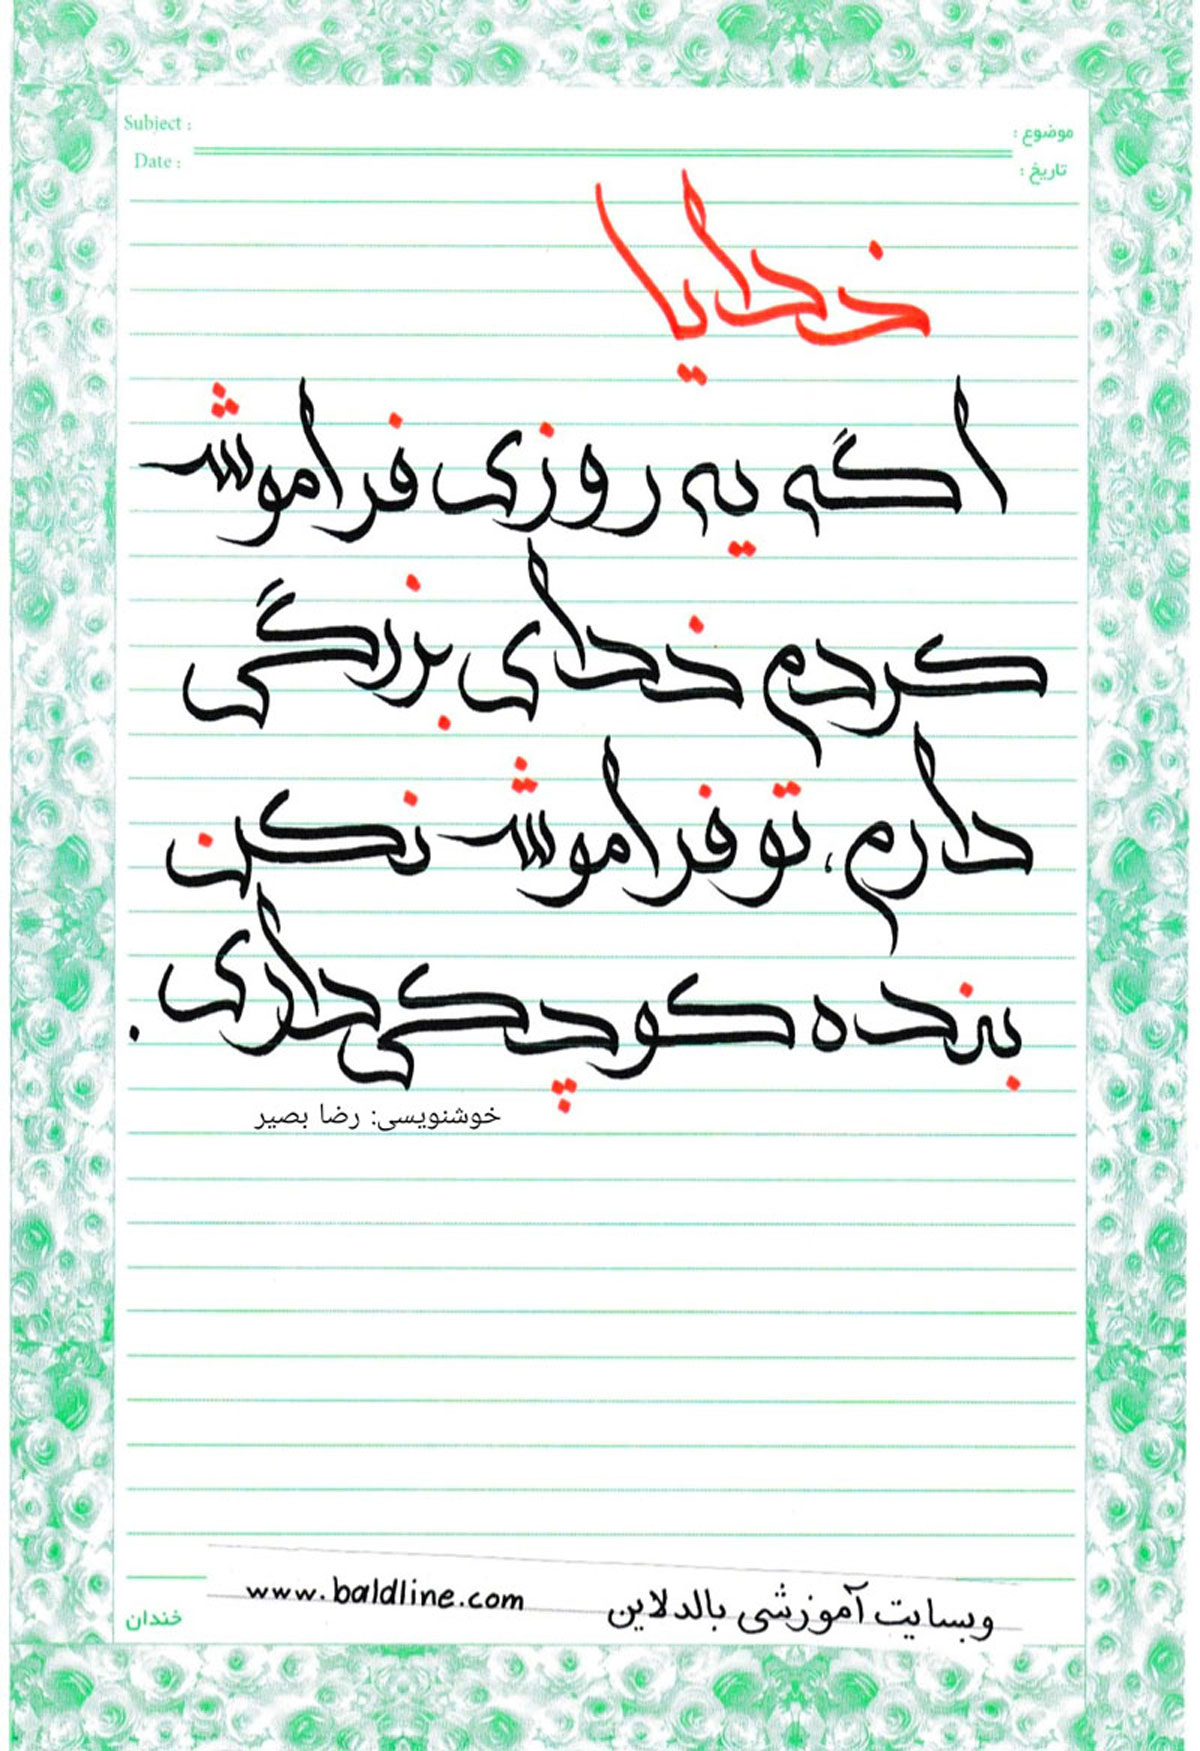 آموزش خوشنویسی خط وسام با قلم الخطاط برای کالیگرافی و متن نویسی